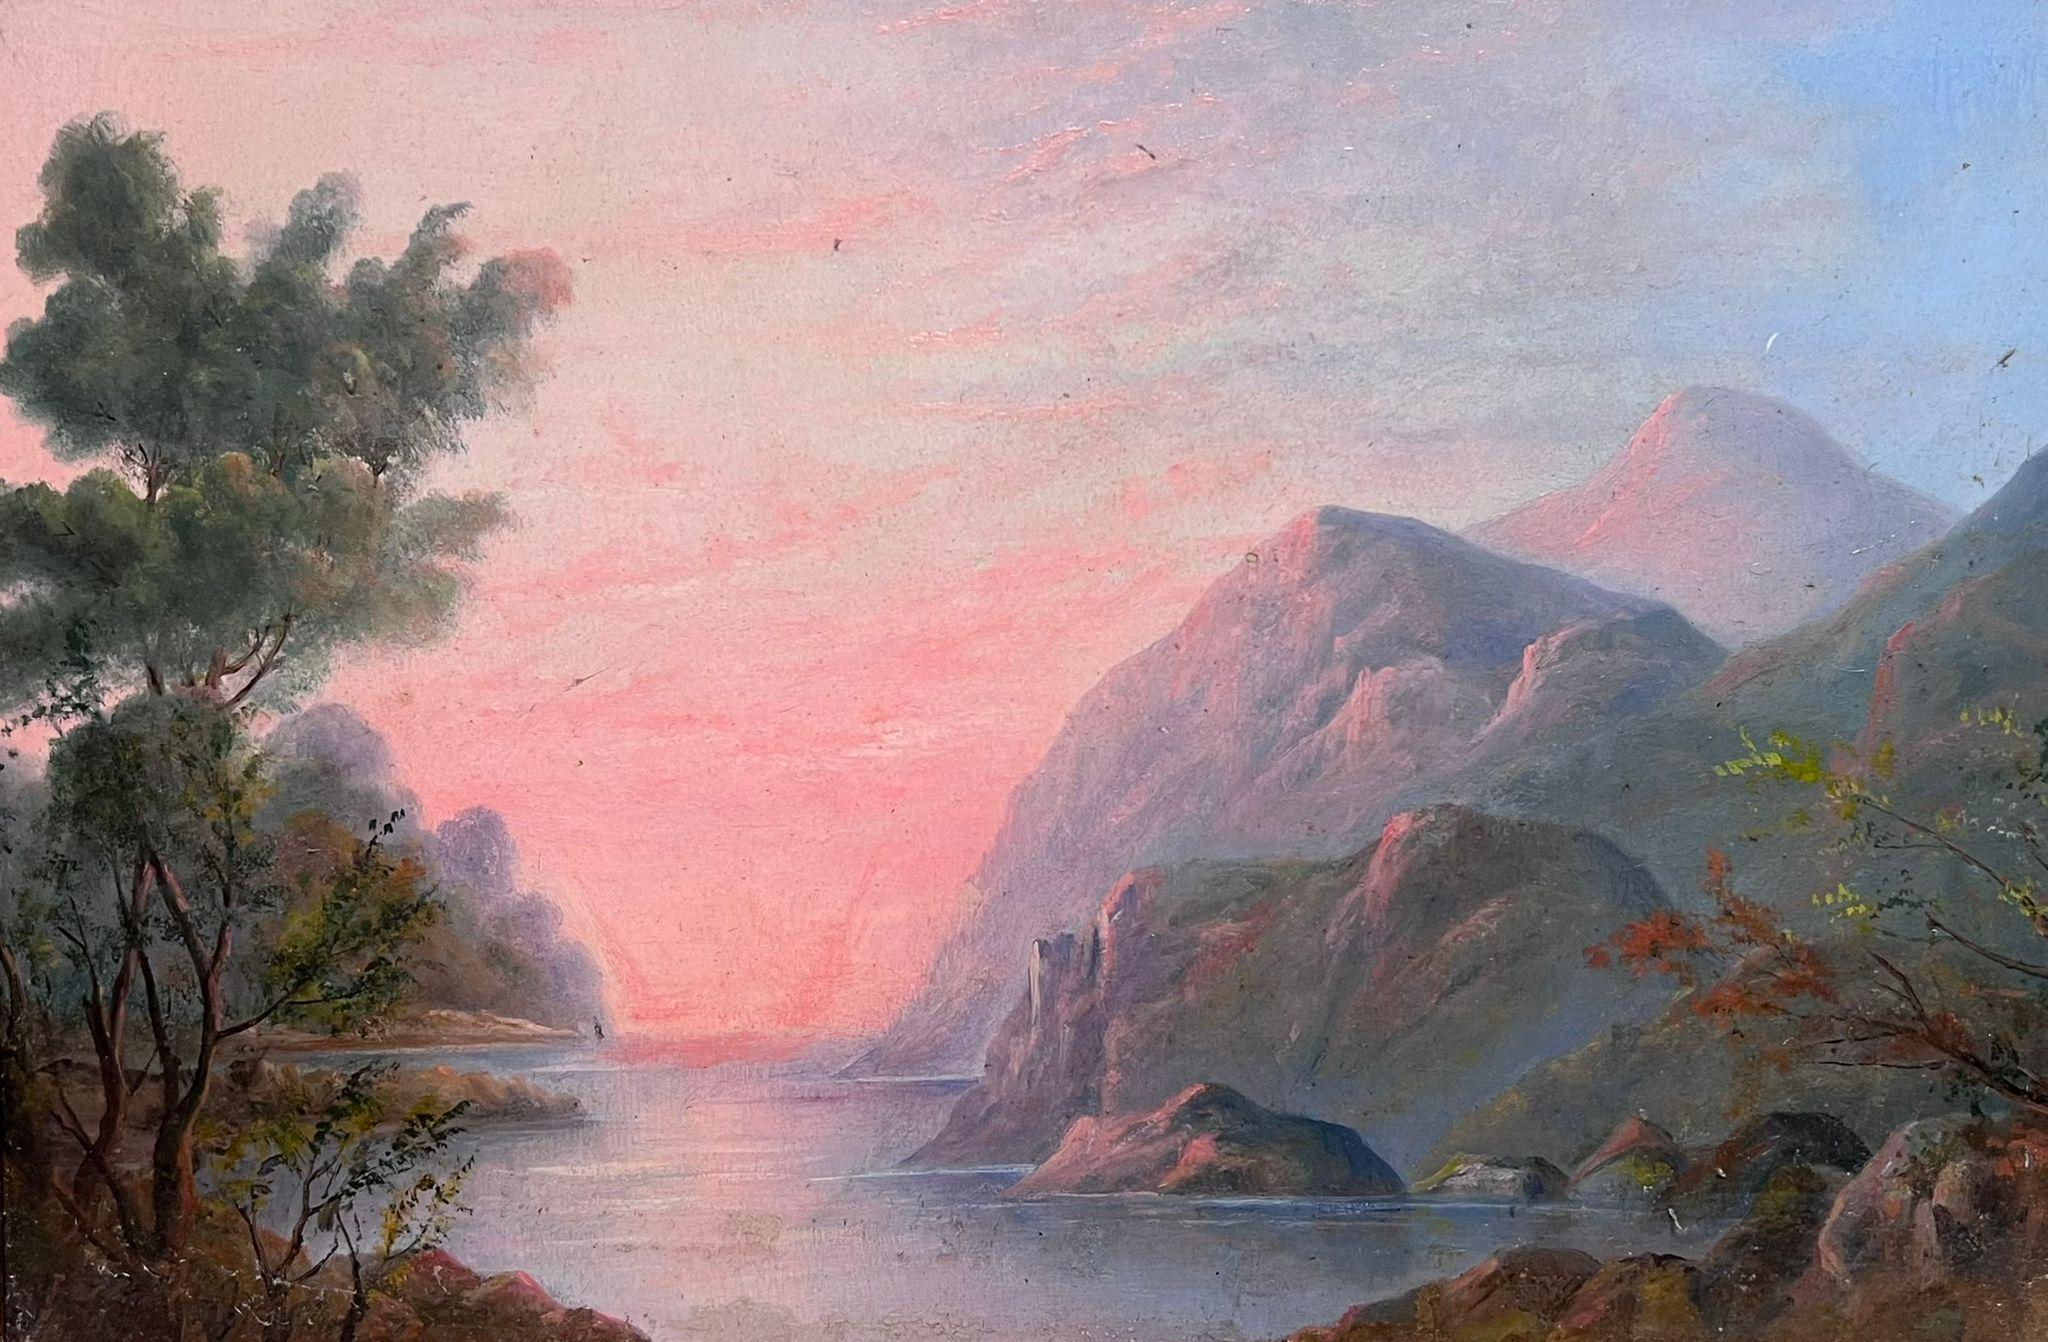 Landscape Painting English Antique Oil  - Mid 19th Century English Oil Painting Pink Sunset over Lake Landscape Hills (peinture à l'huile anglaise du milieu du XIXe siècle)